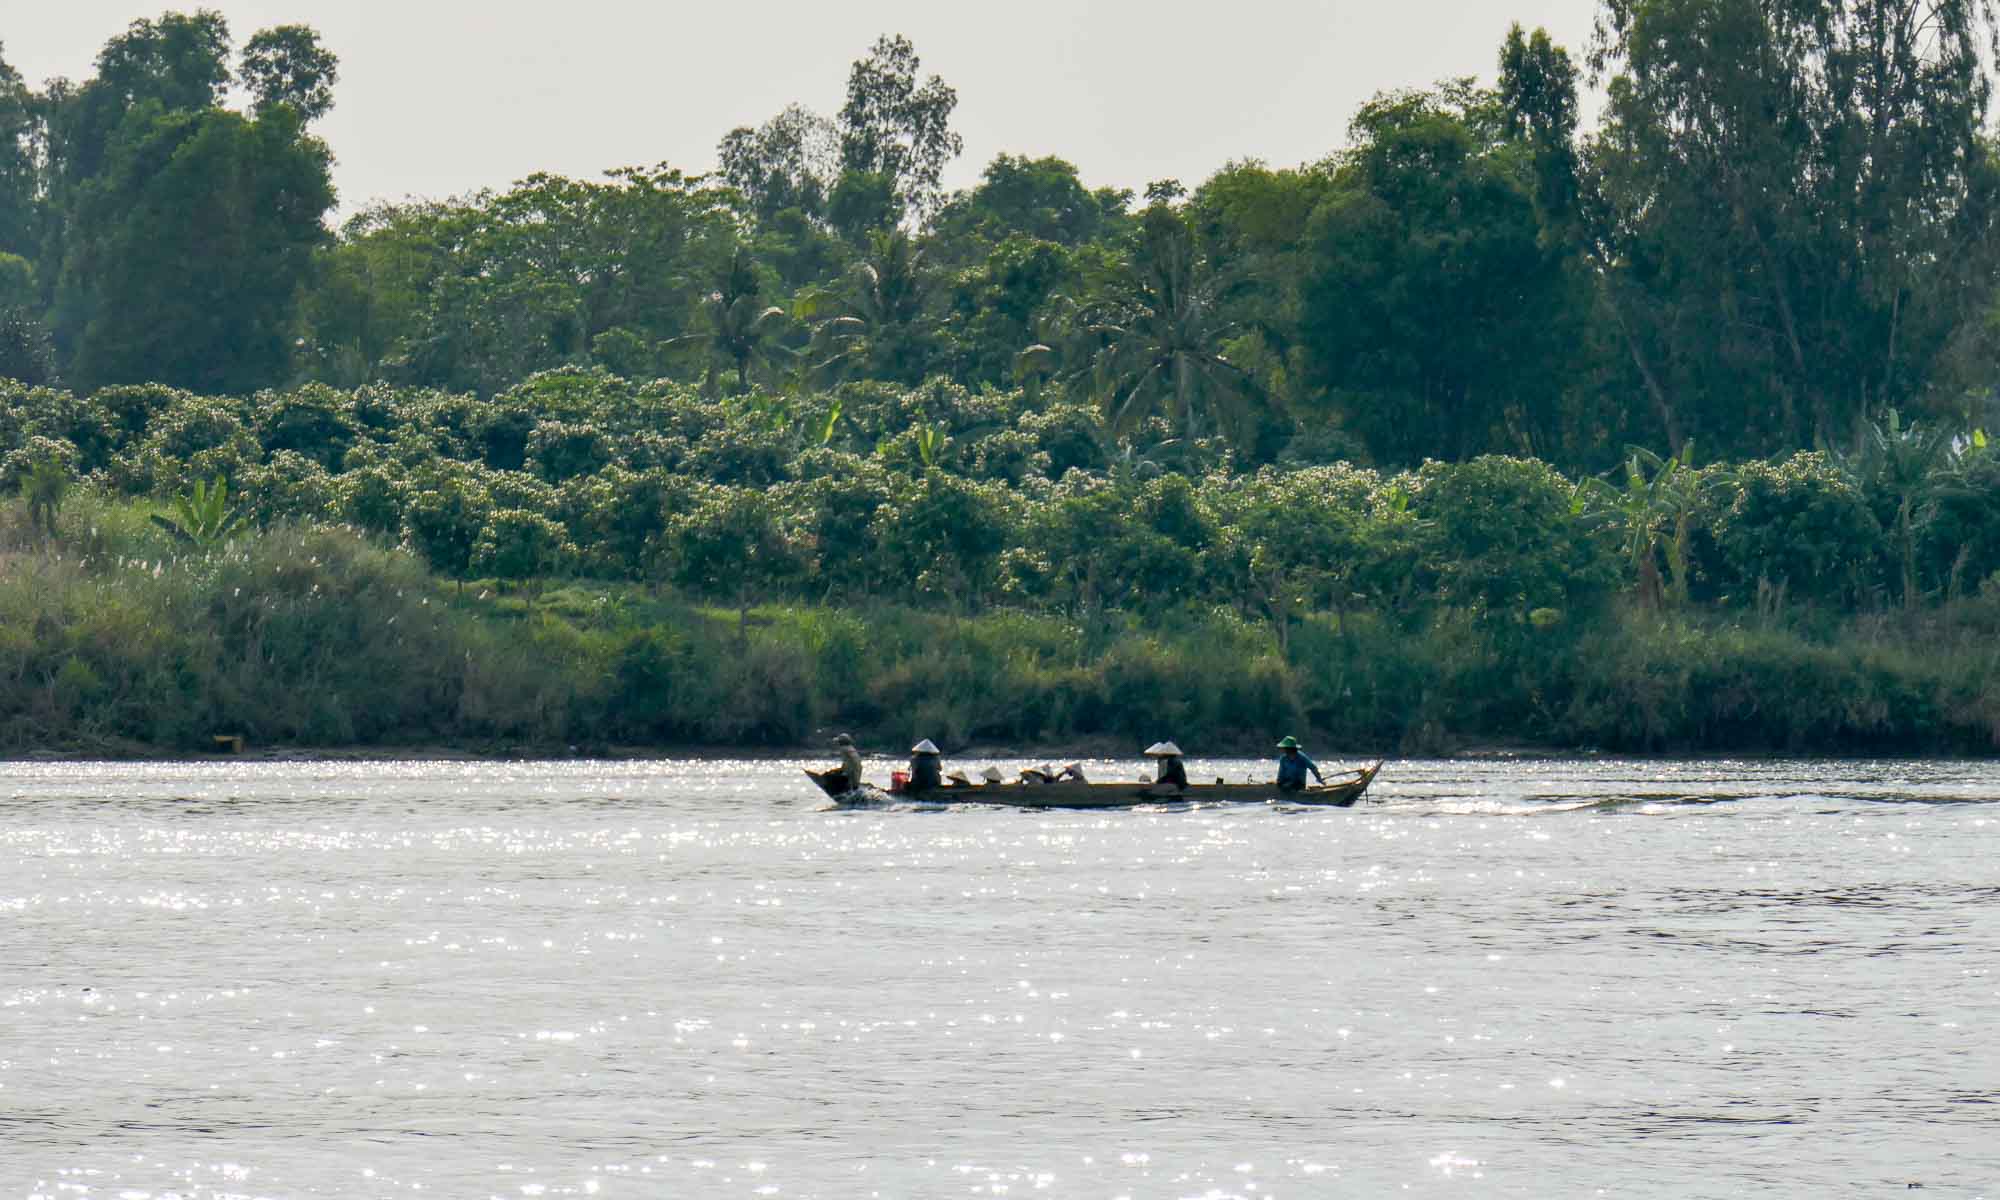 On the Mekong River